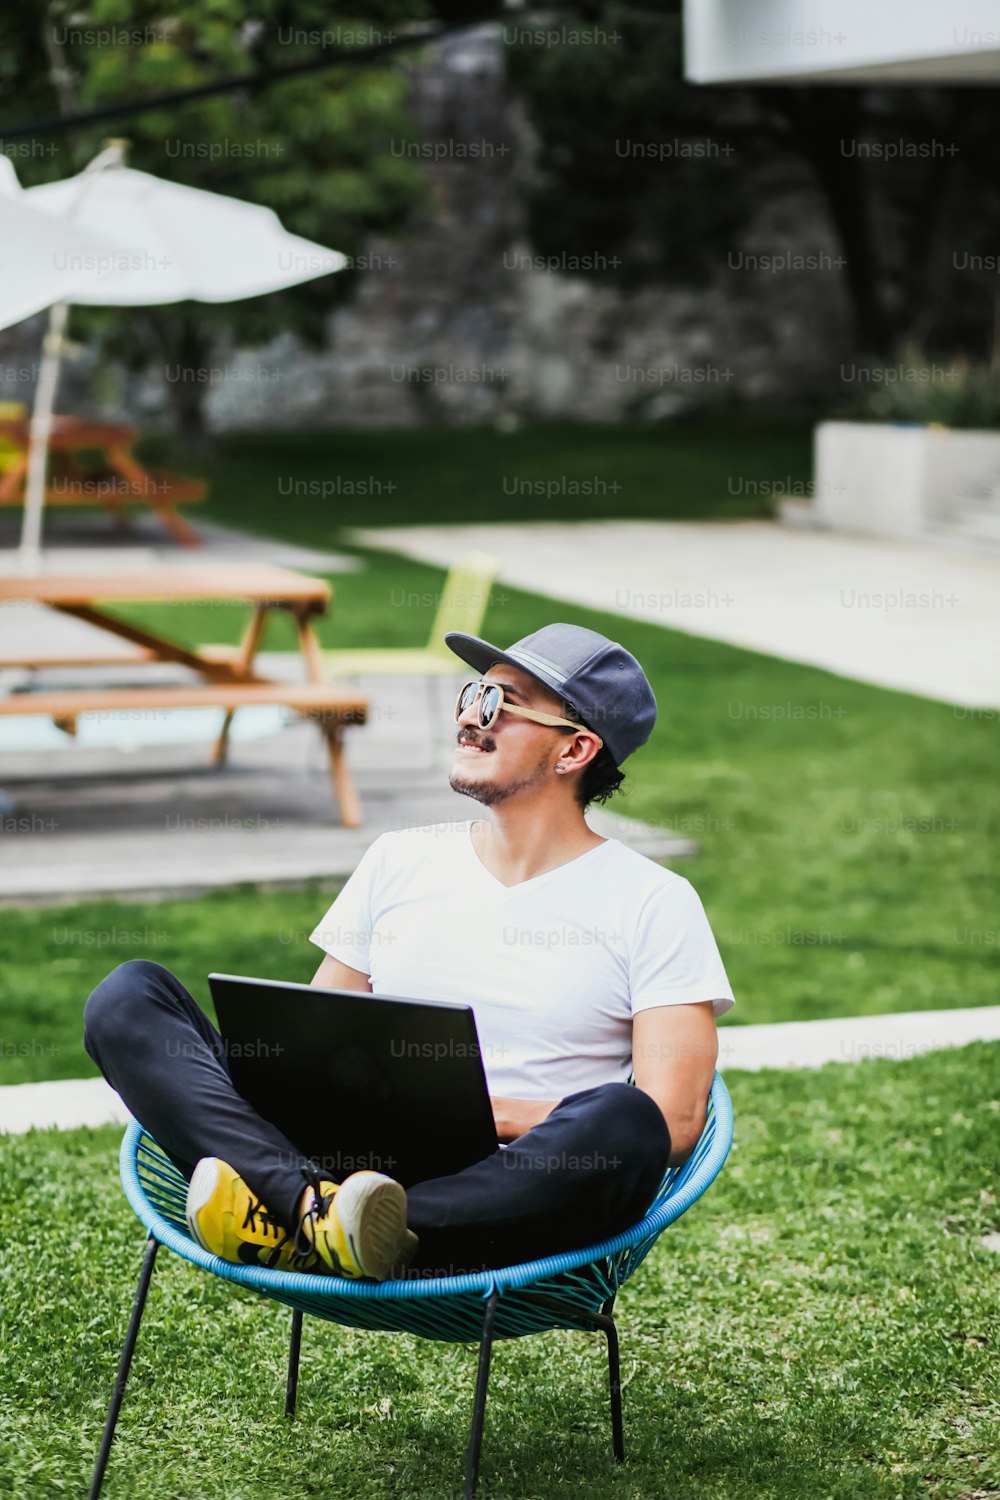 Uomo latino che lavora con il computer portatile all'aperto in una bella terrazza utilizzando lo smartphone e il computer che si siede a gambe incrociate nel lavoro domestico a Città del Messico